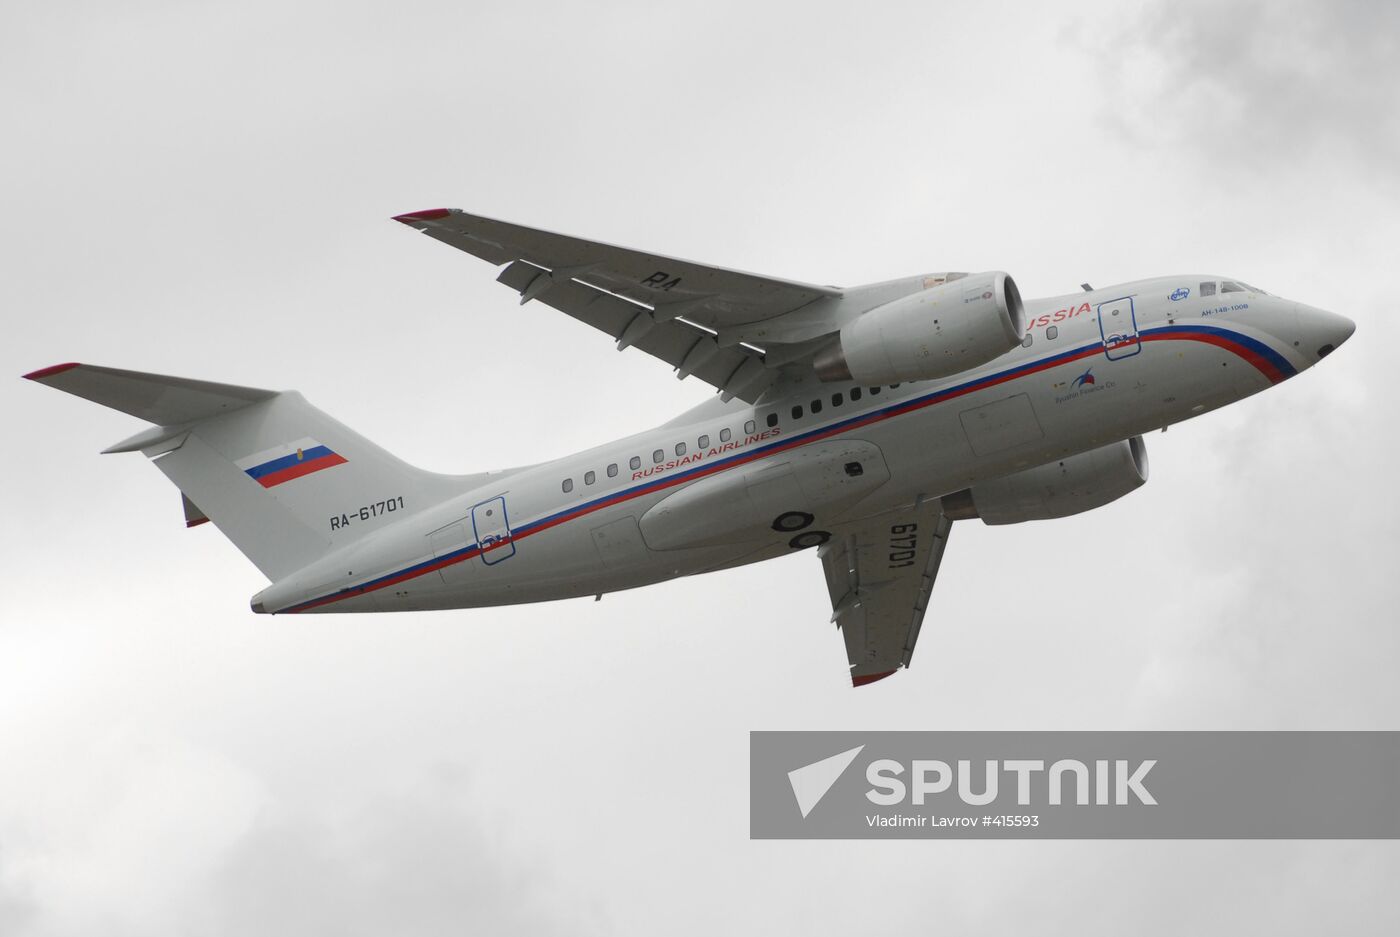 Russian-Ukrainian An-148 unveiled